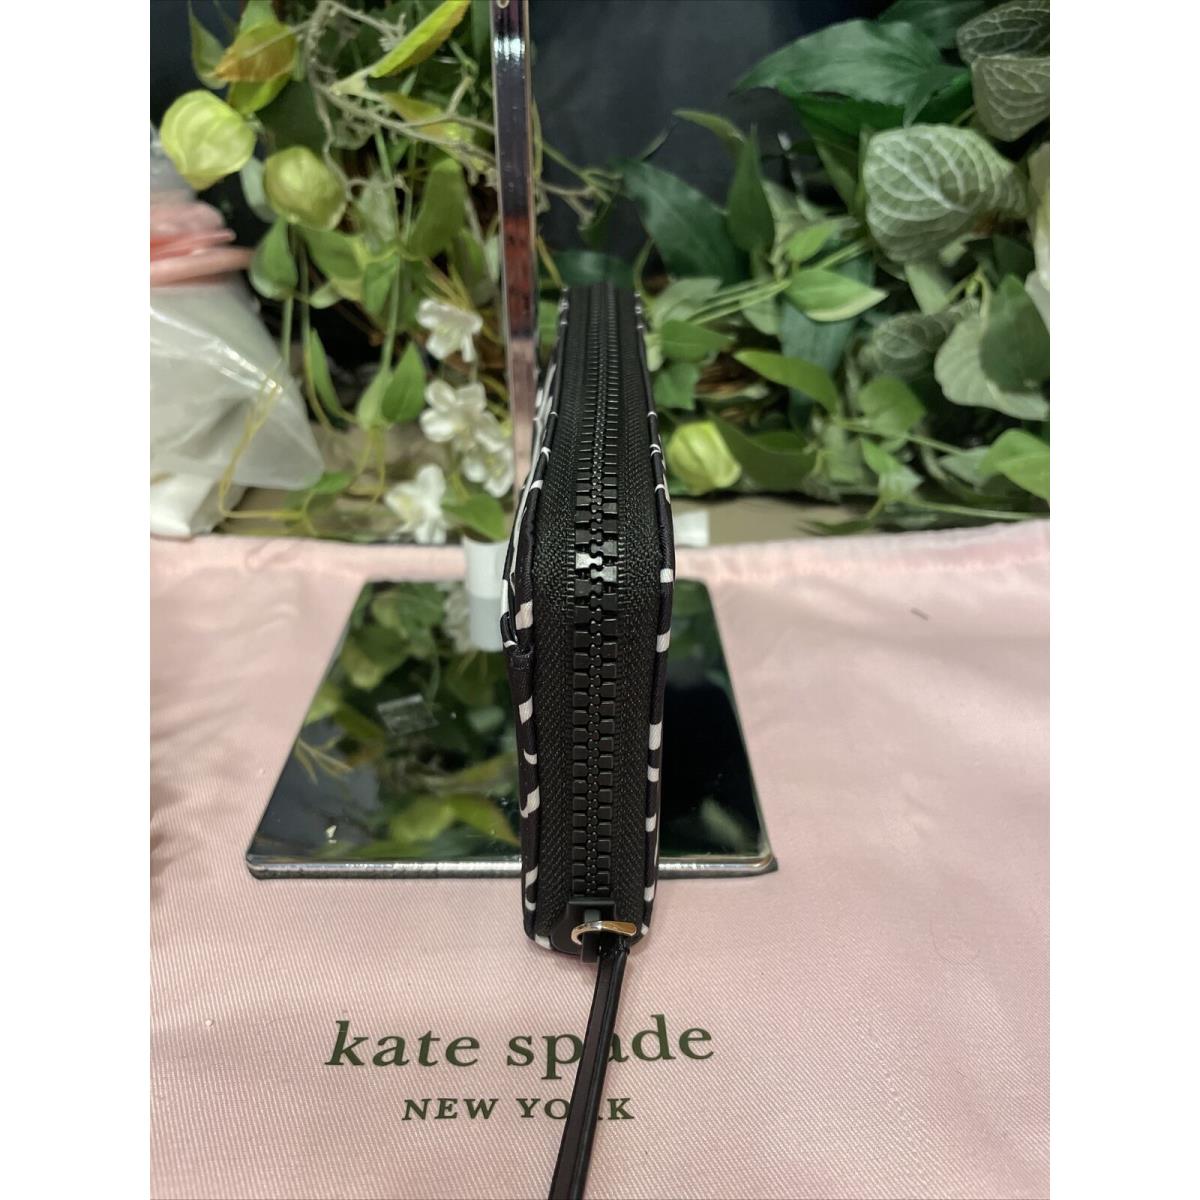 Kate Spade wallet  - Black/white